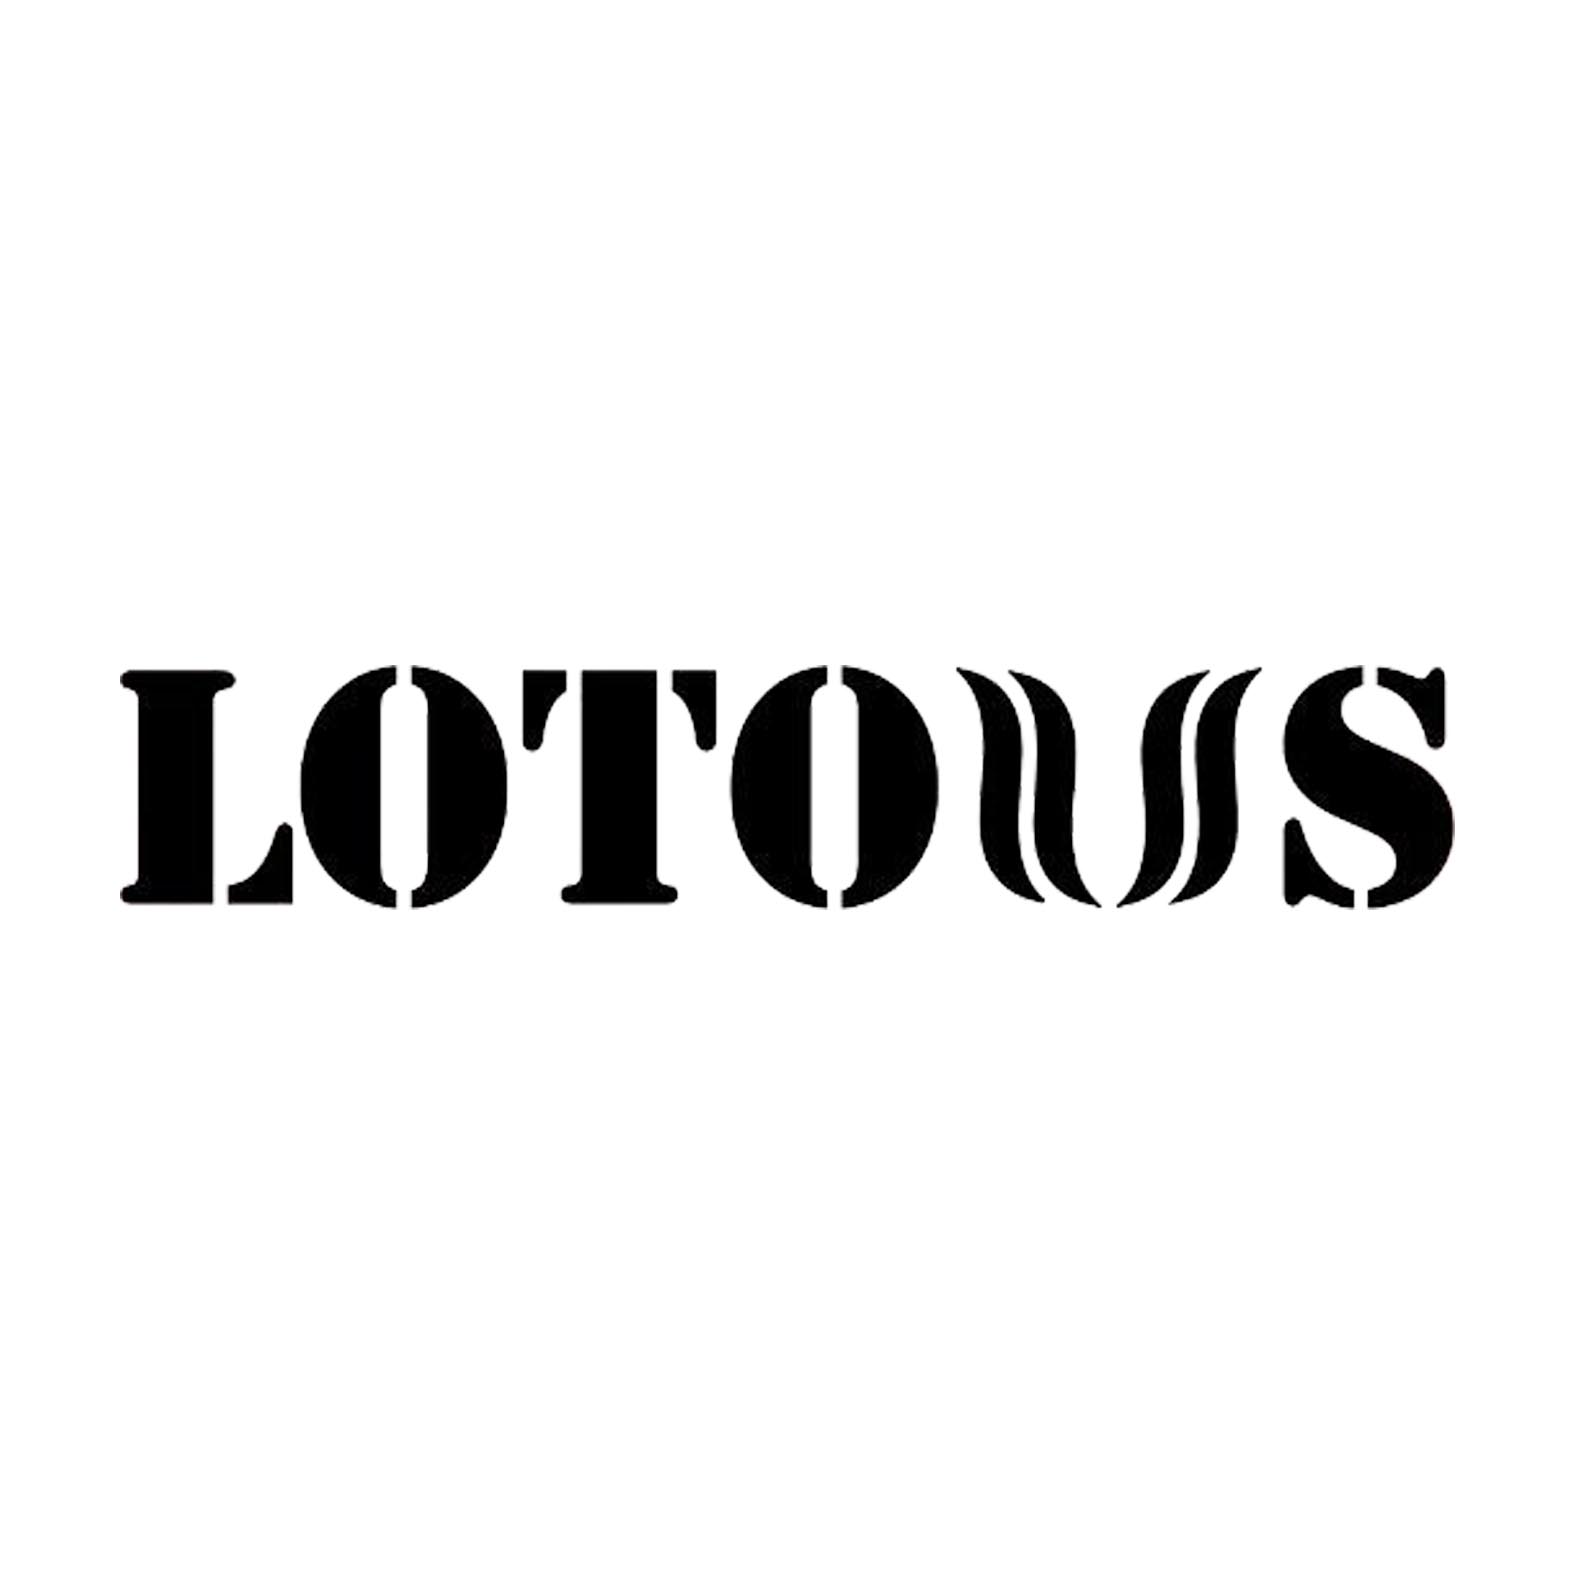 لوگو برند لوتوس lotous logo - لایف رایان